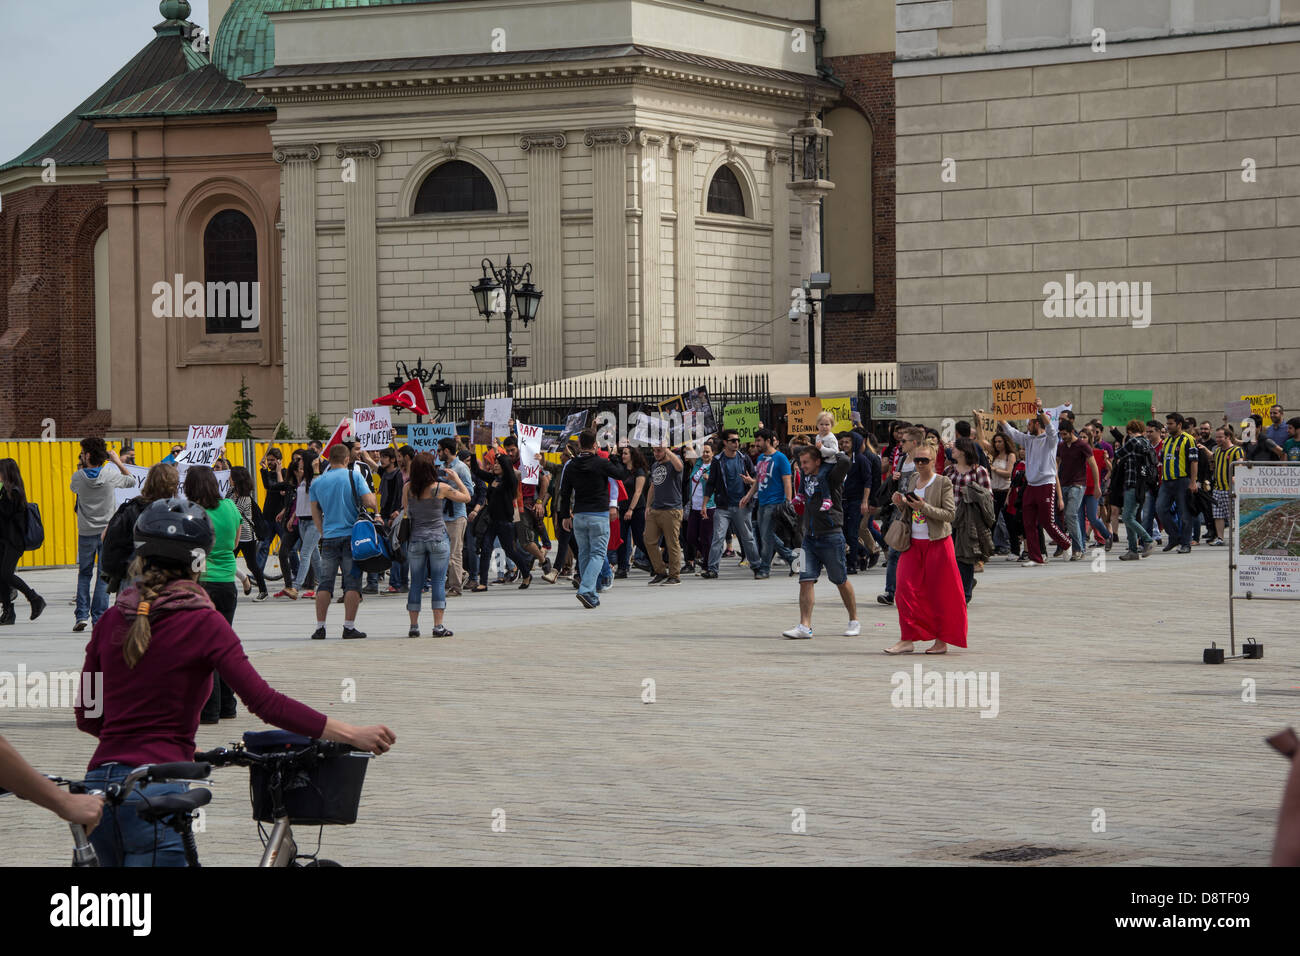 Warschau, Polen, 2. Juni 2013. Demonstration der türkischen Bürger gegen die Politik der türkischen Regierung. Bildnachweis: Marcin Poziemski / Alamy Live News Stockfoto